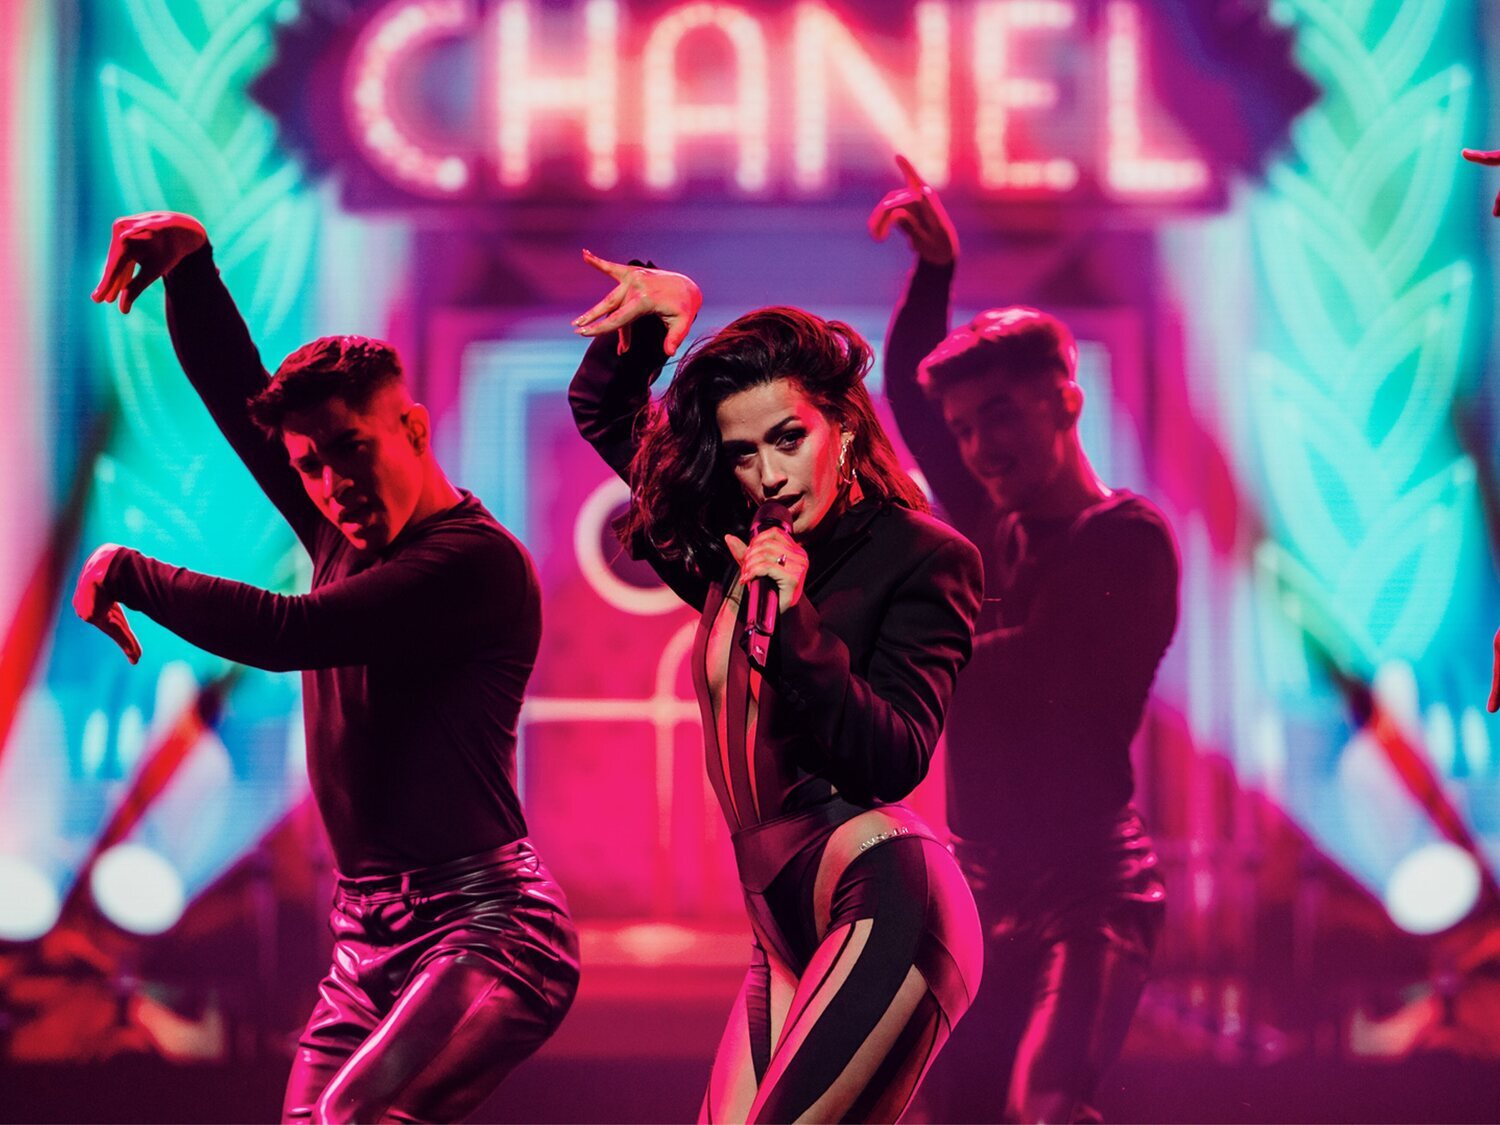 Chanel arrasa con su actuación de 'SloMo' en el Festival da Cançao de Portugal